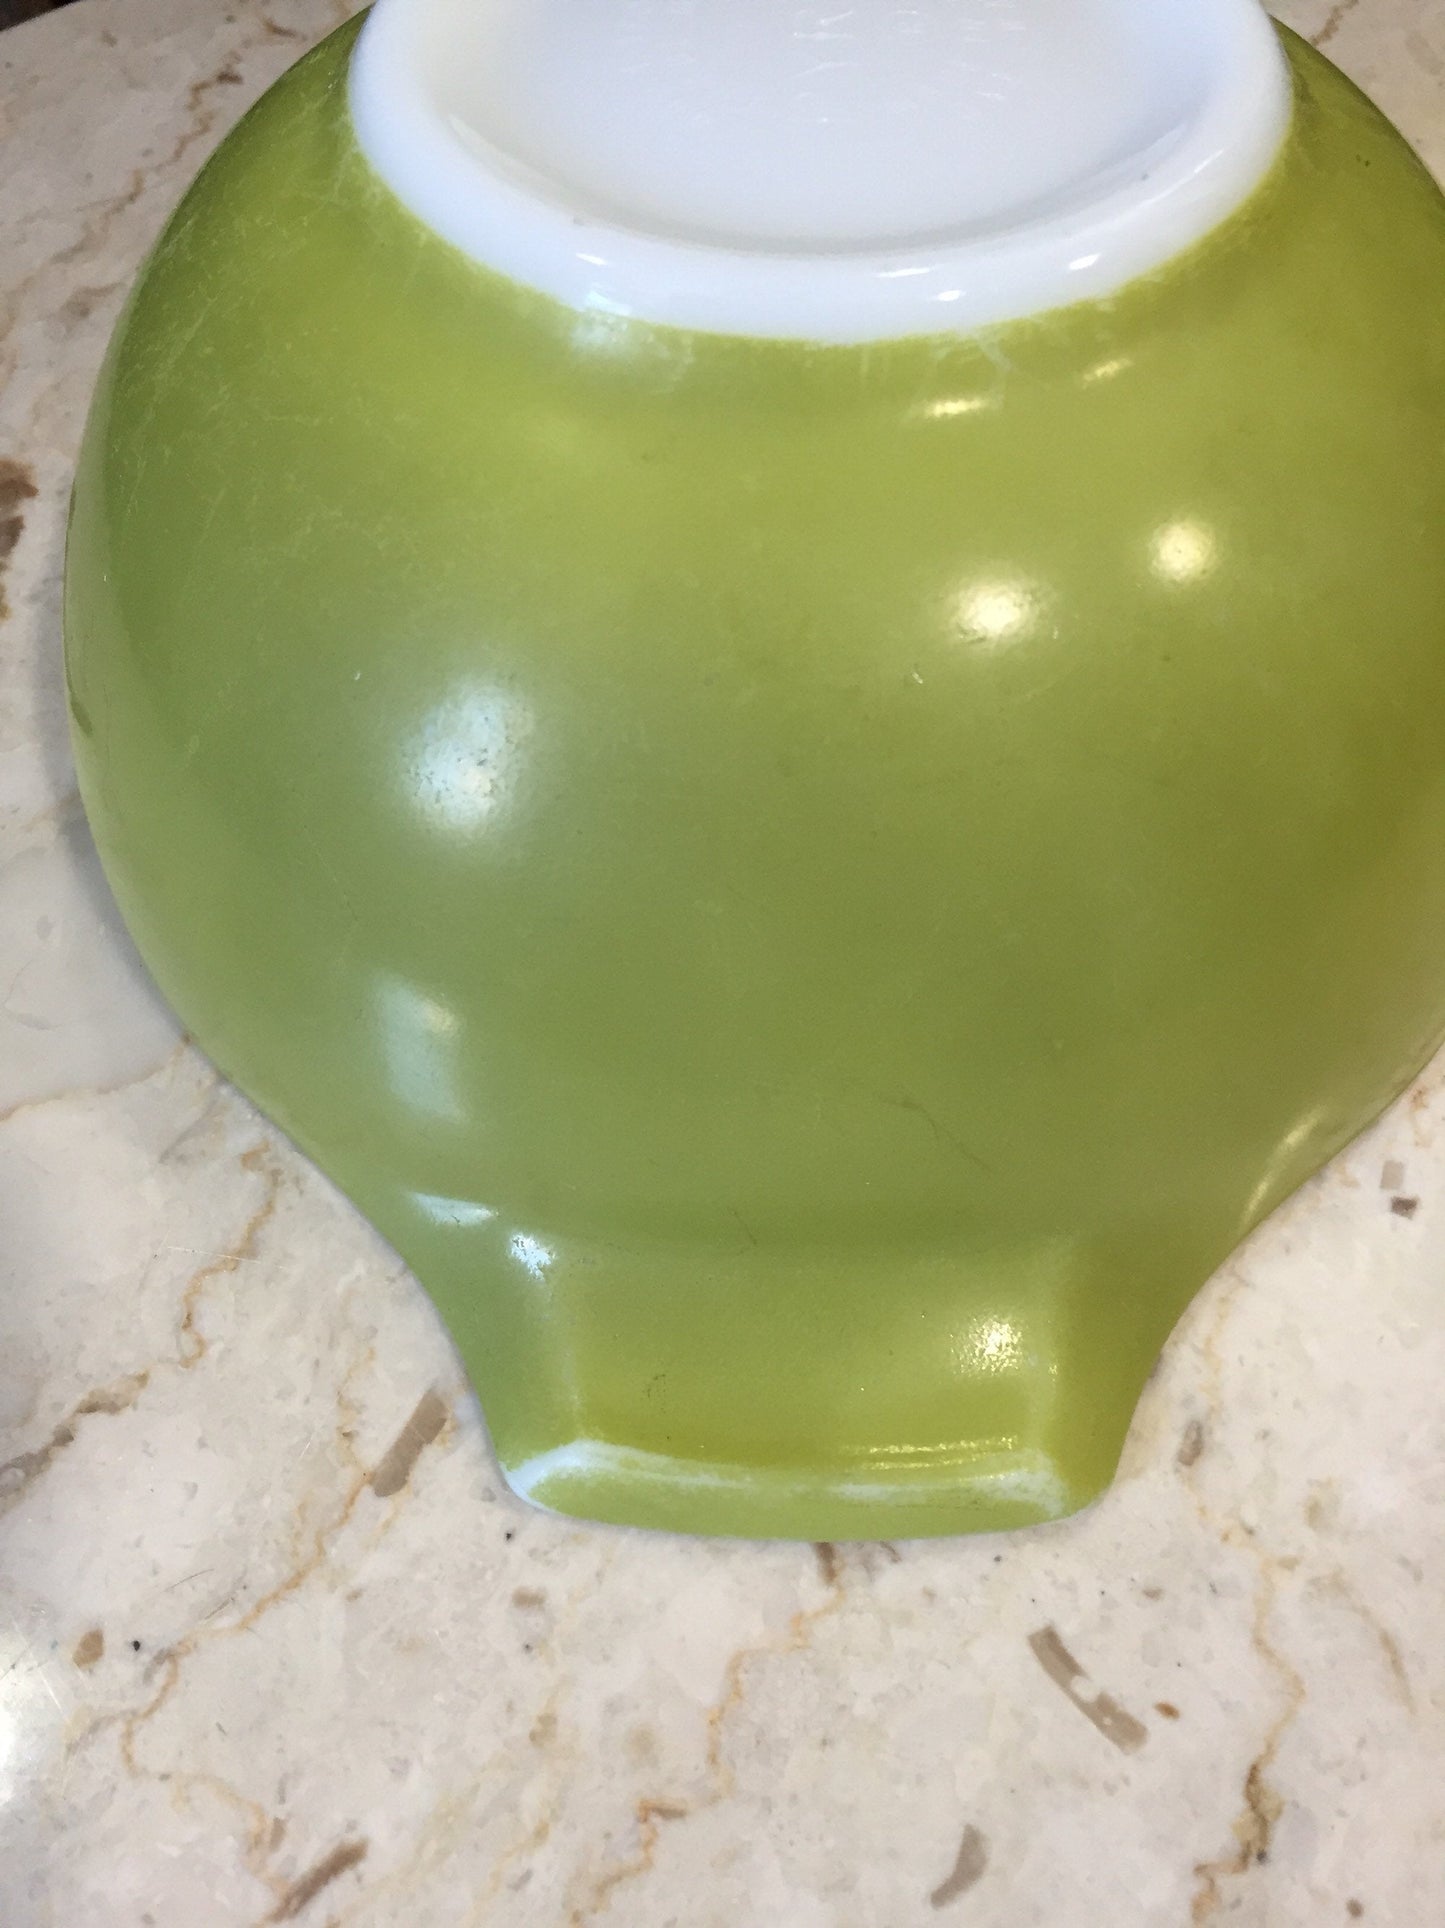 Vintage Pyrex Avocado Green Mixing Bowl 442 - Pyrex Vintage Mixing Bowls - Pyrex Cinderella Bowl 442 - Pyrex Mixing Bowl - Green Bowl